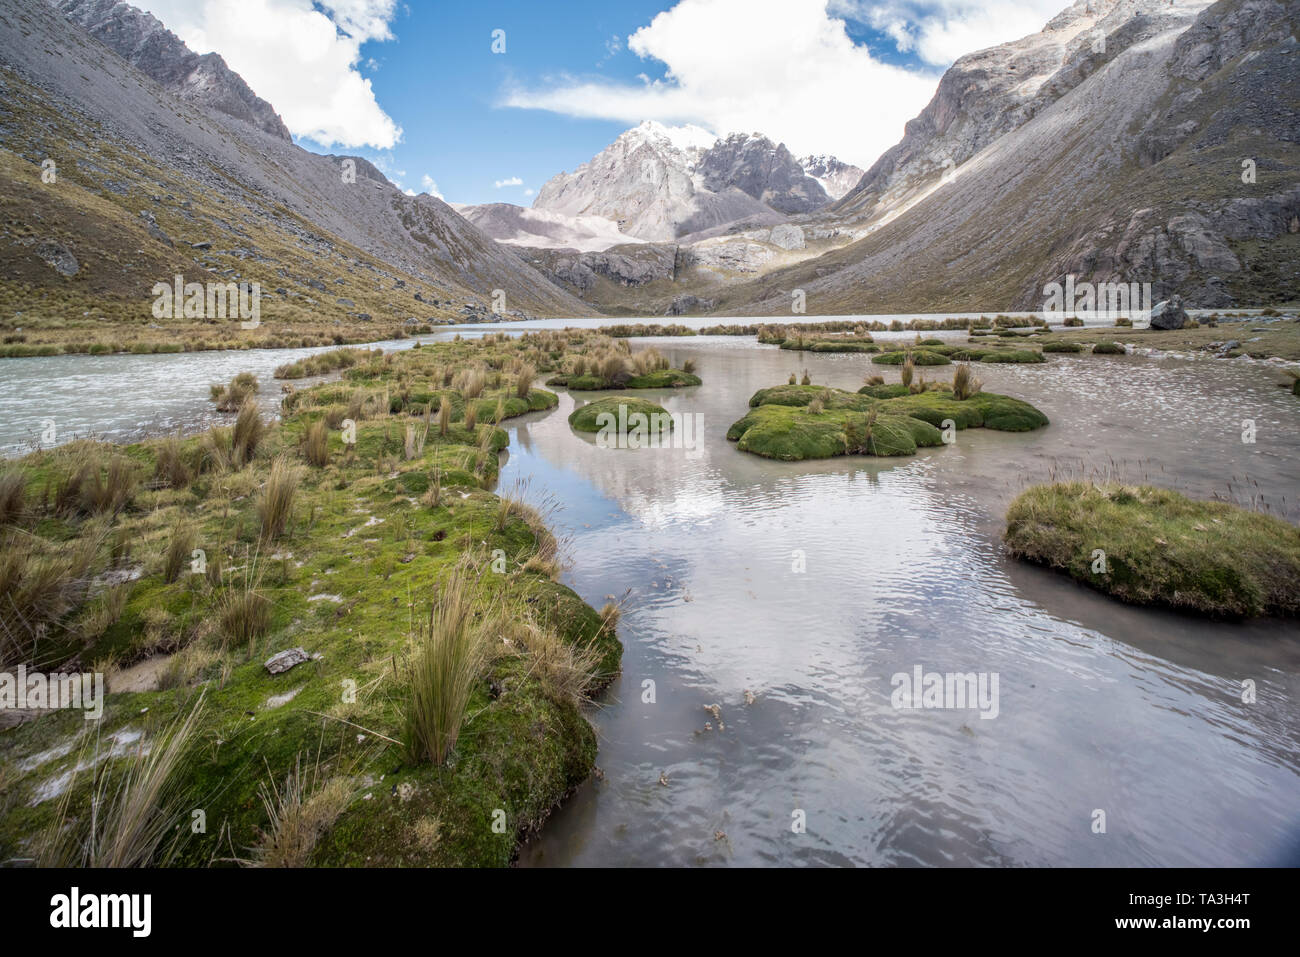 Inmitten der steilen Hänge der Cordillera Vilcanota, ein Teil der Anden im Süden Perus ist es möglich, stehendes Wasser in Gletscher gespeist Seen zu finden. Stockfoto